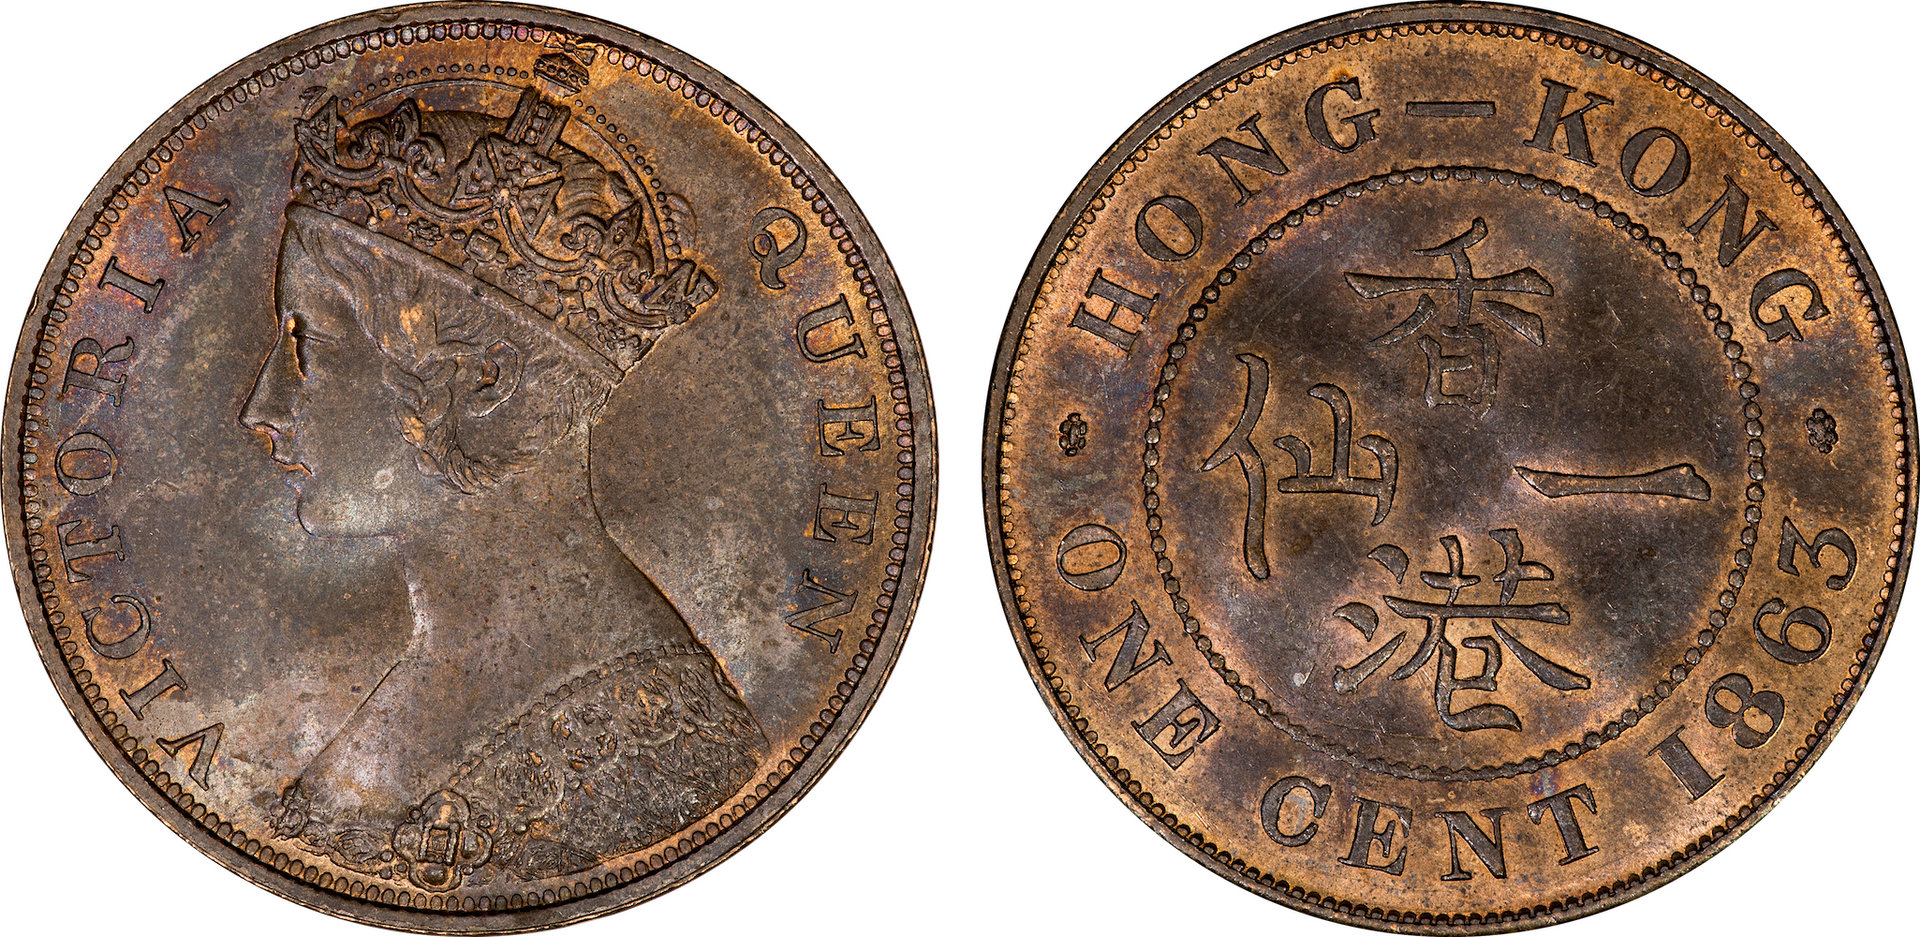 Hong Kong - 1863 One Cent.jpg